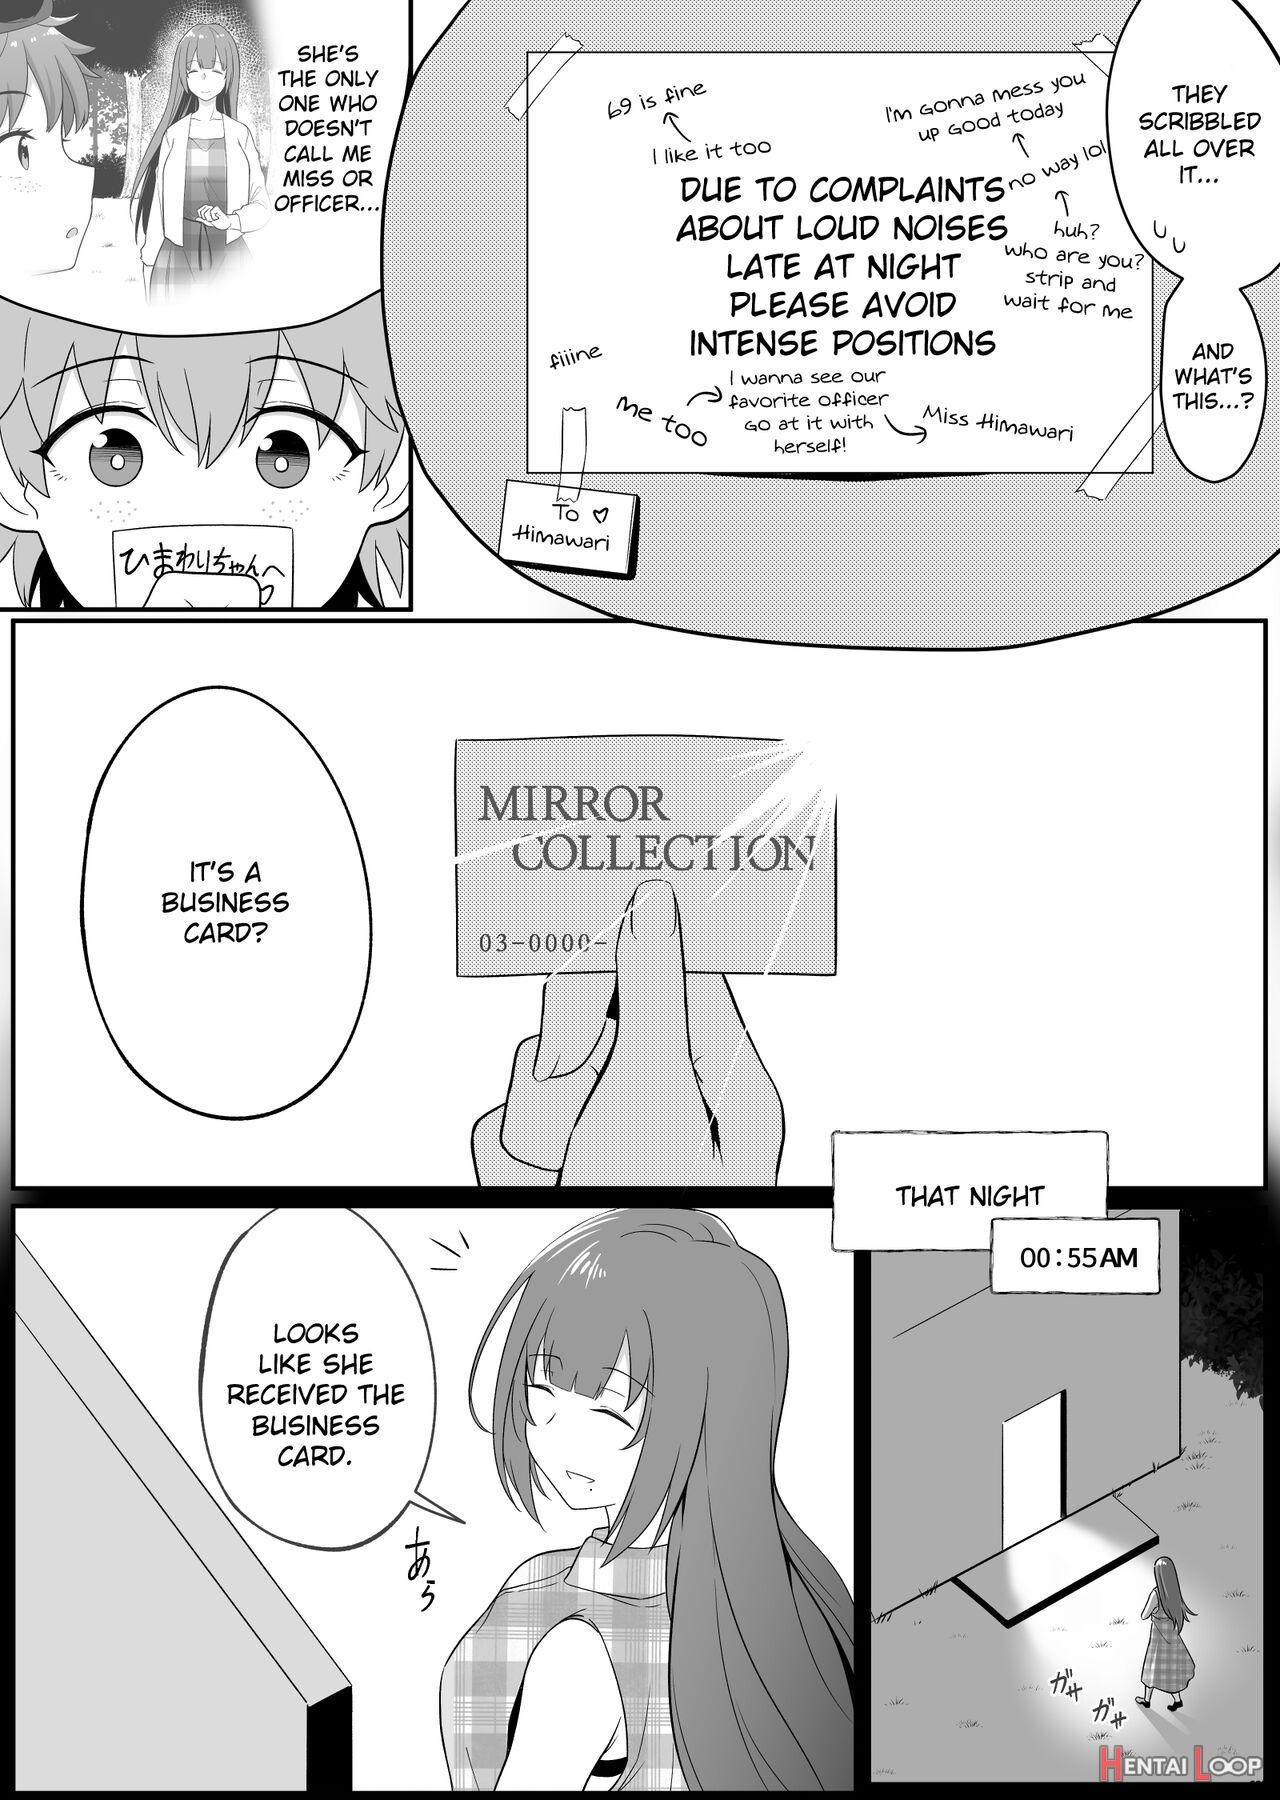 Xion Mirror Collection Vol.6 page 45